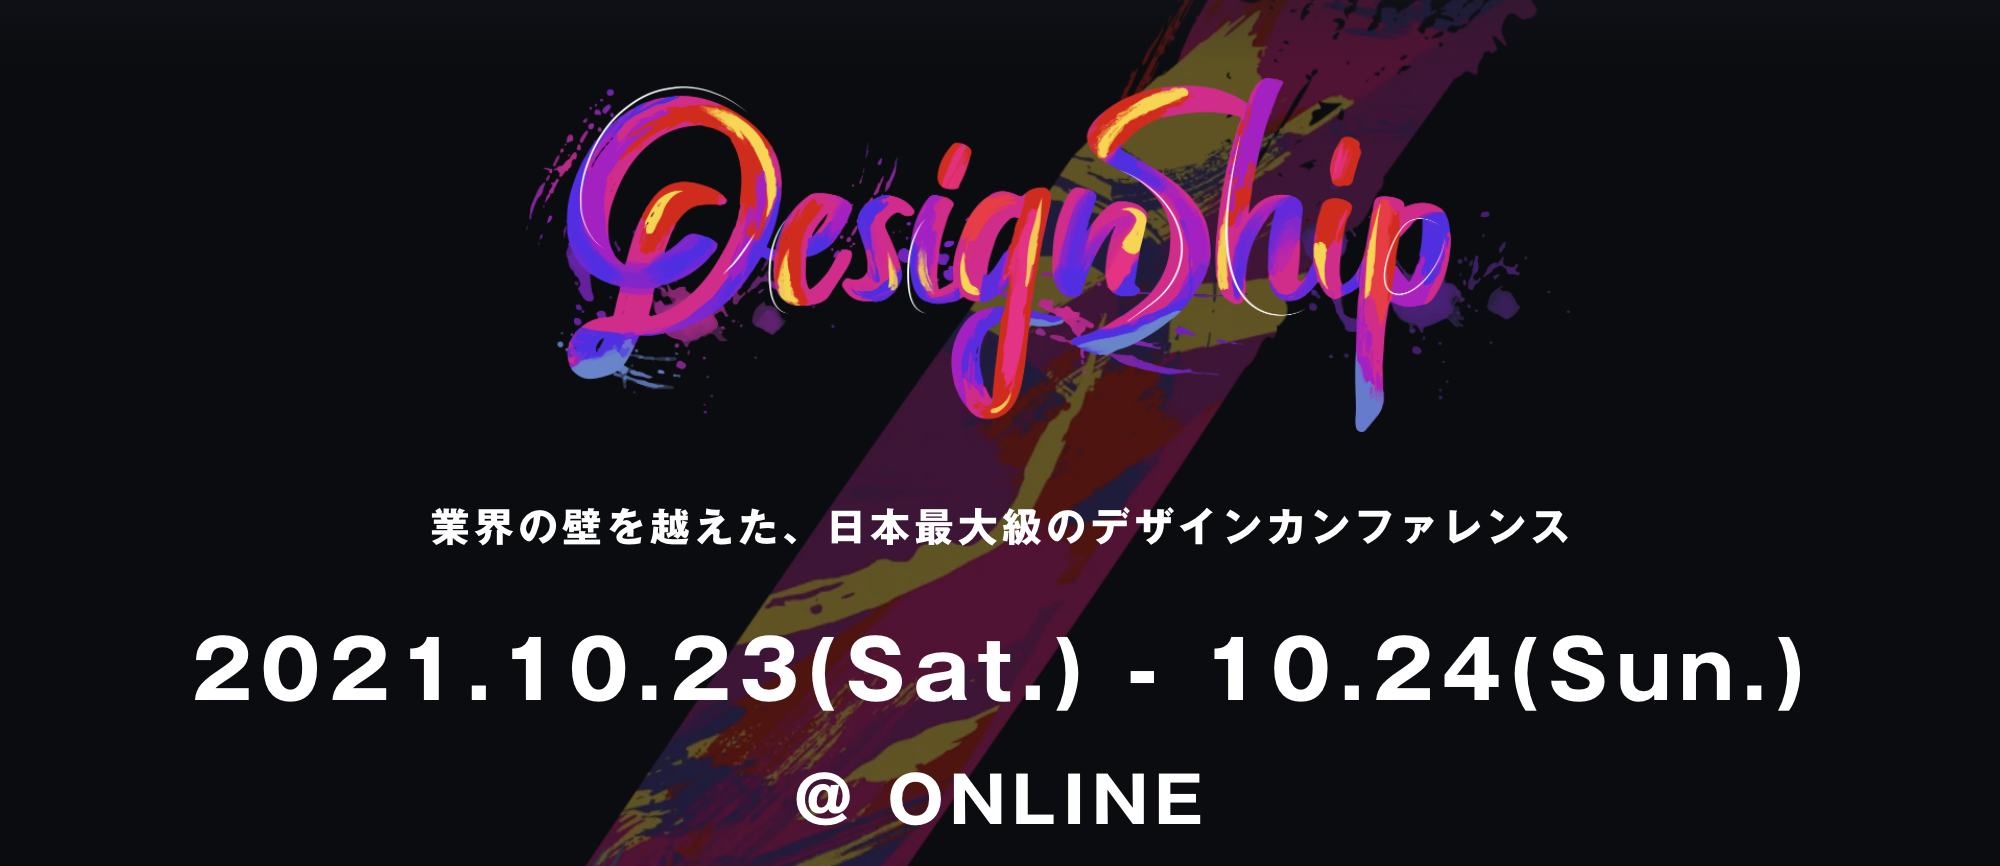 日本最大級のデザインカンファレンス「Designship 2021」登壇者13名を発表。​CDO篠原健も登壇